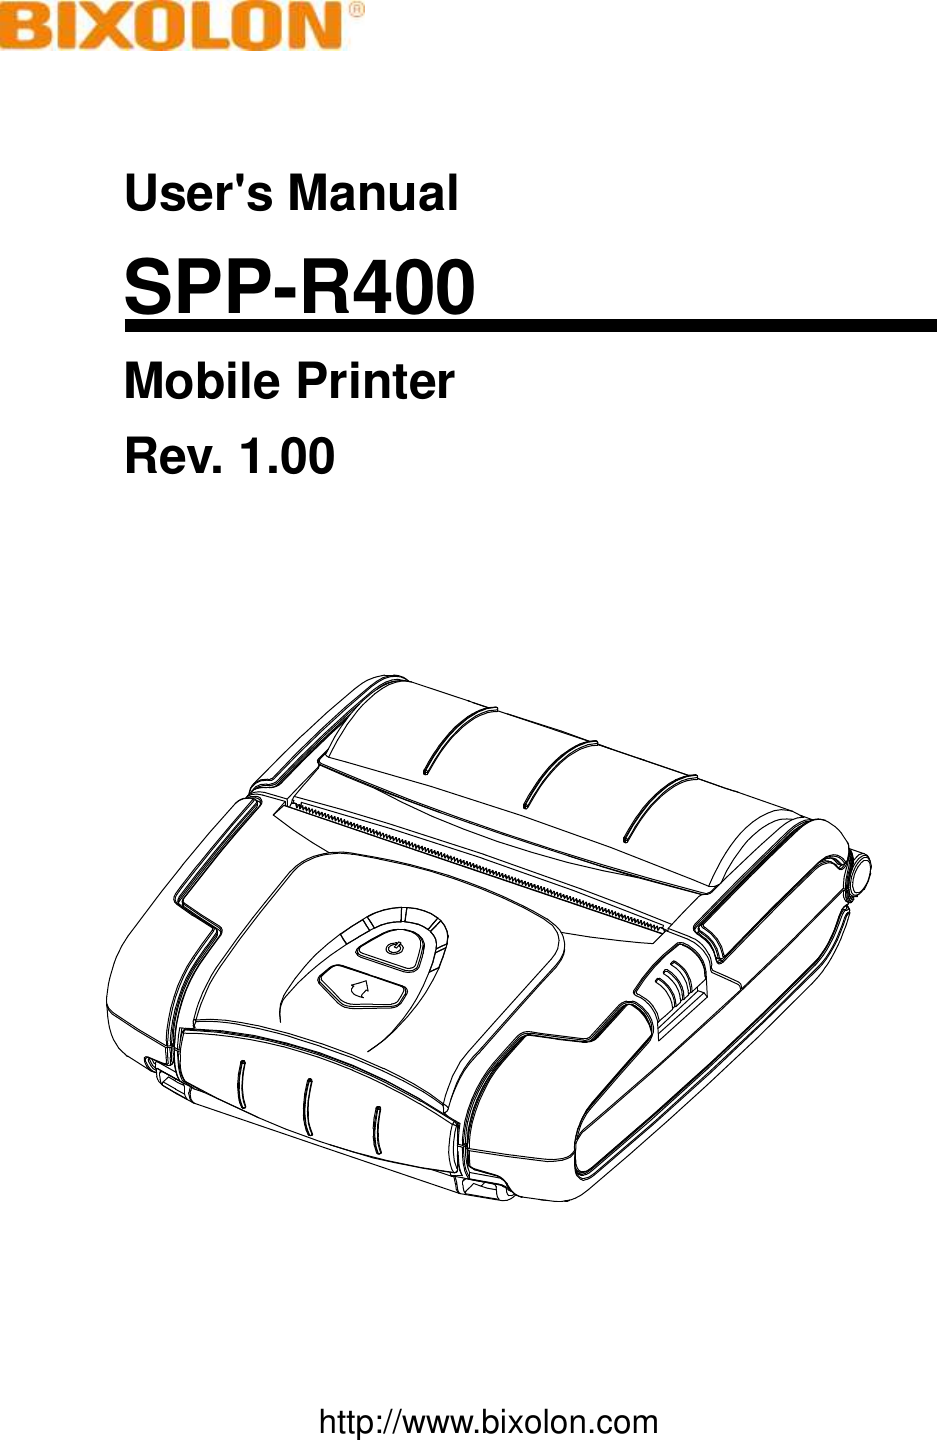     User&apos;s Manual SPP-R400 Mobile Printer Rev. 1.00        http://www.bixolon.com 